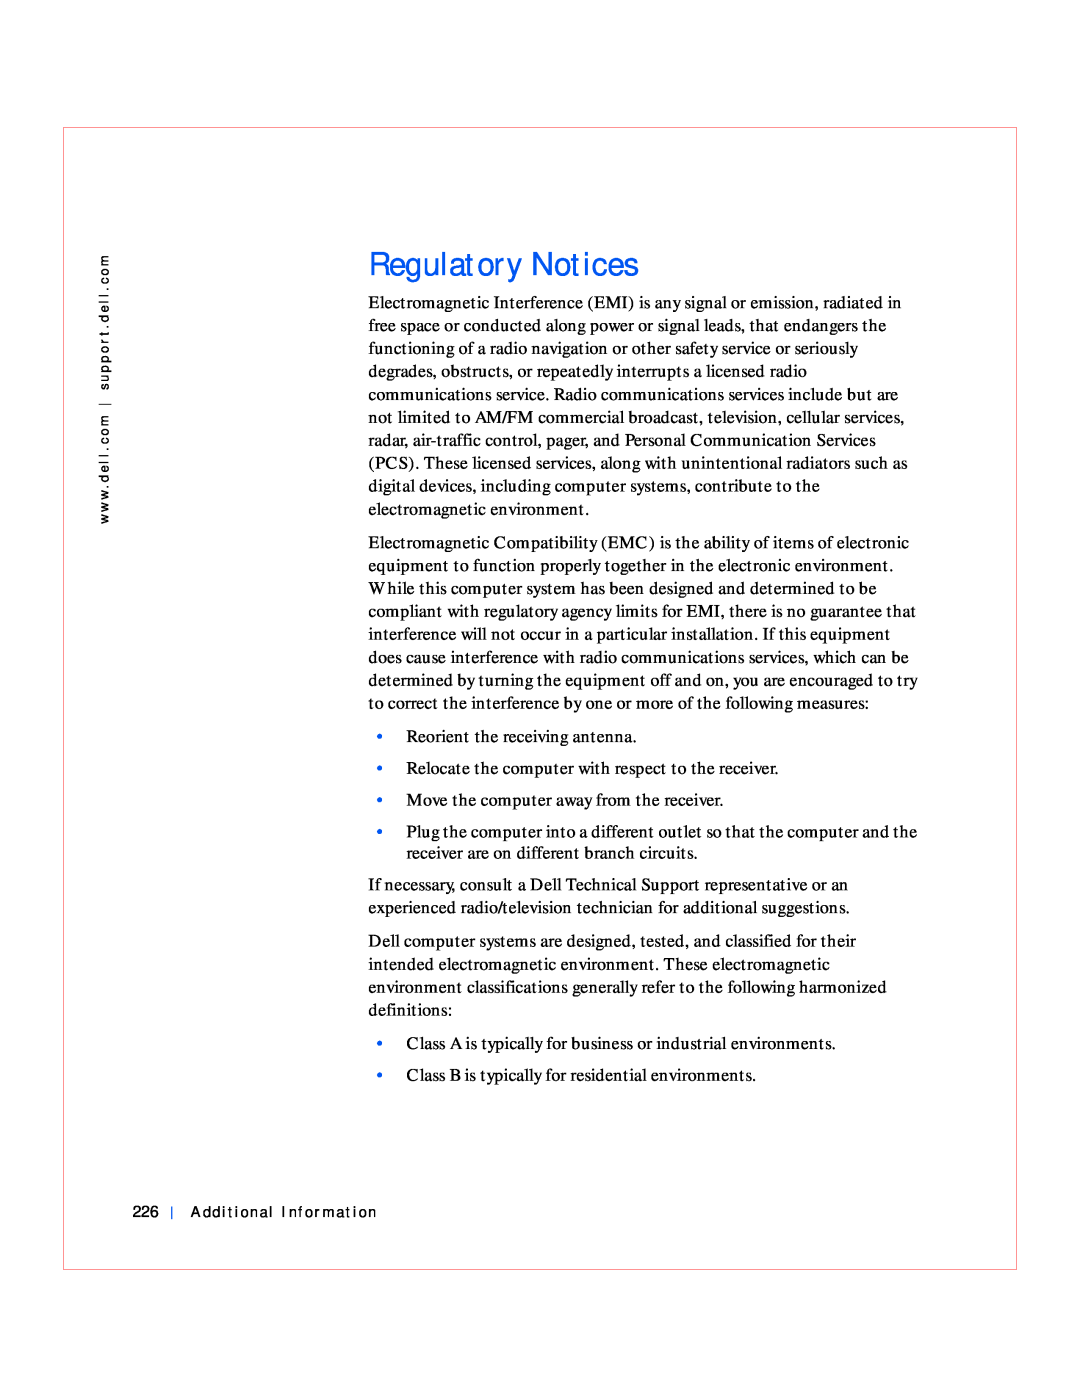 Dell GX240 manual Regulatory Notices 